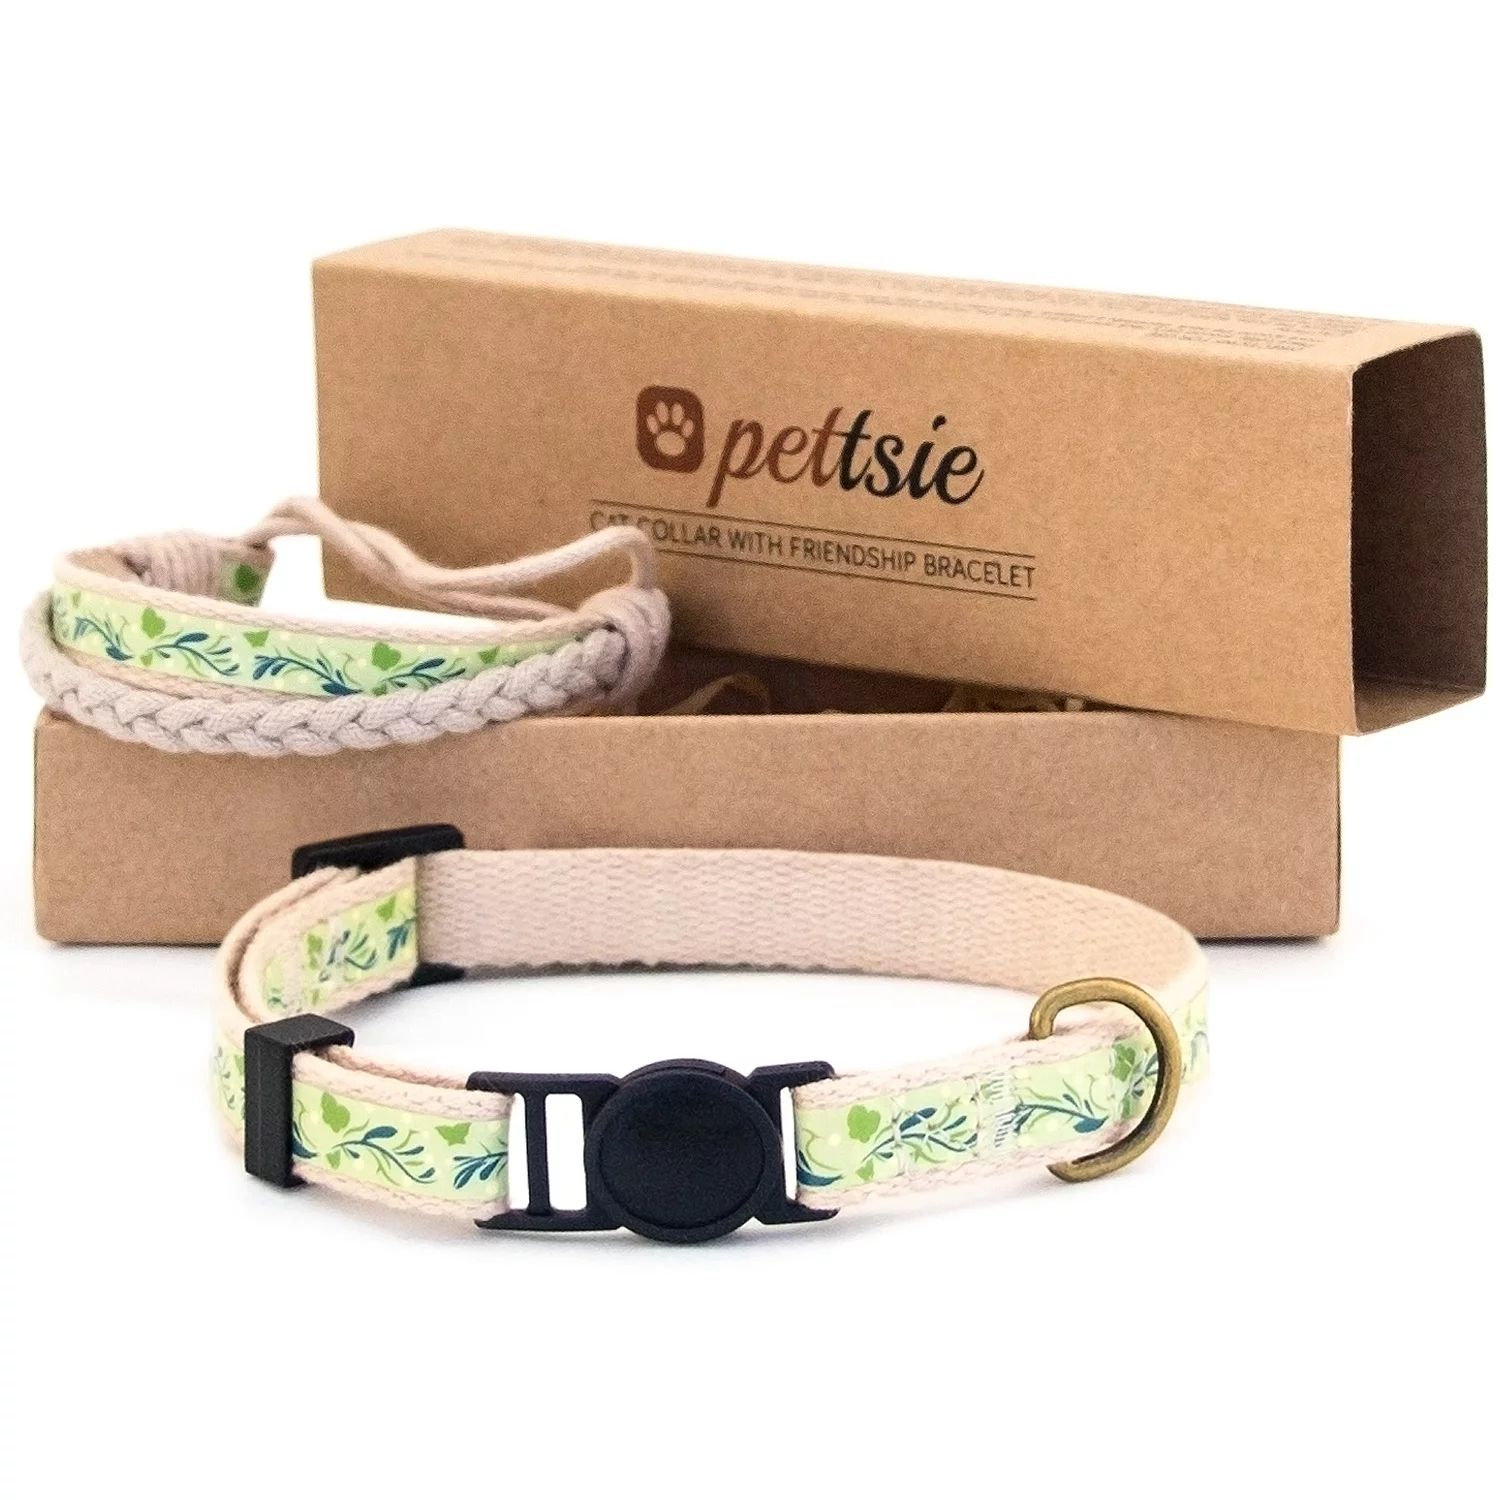 Pettsie Green Breakaway Kitten Collar and Matching Friendship Bracelet in Earth-Friendly Gift Box | Walmart (US)